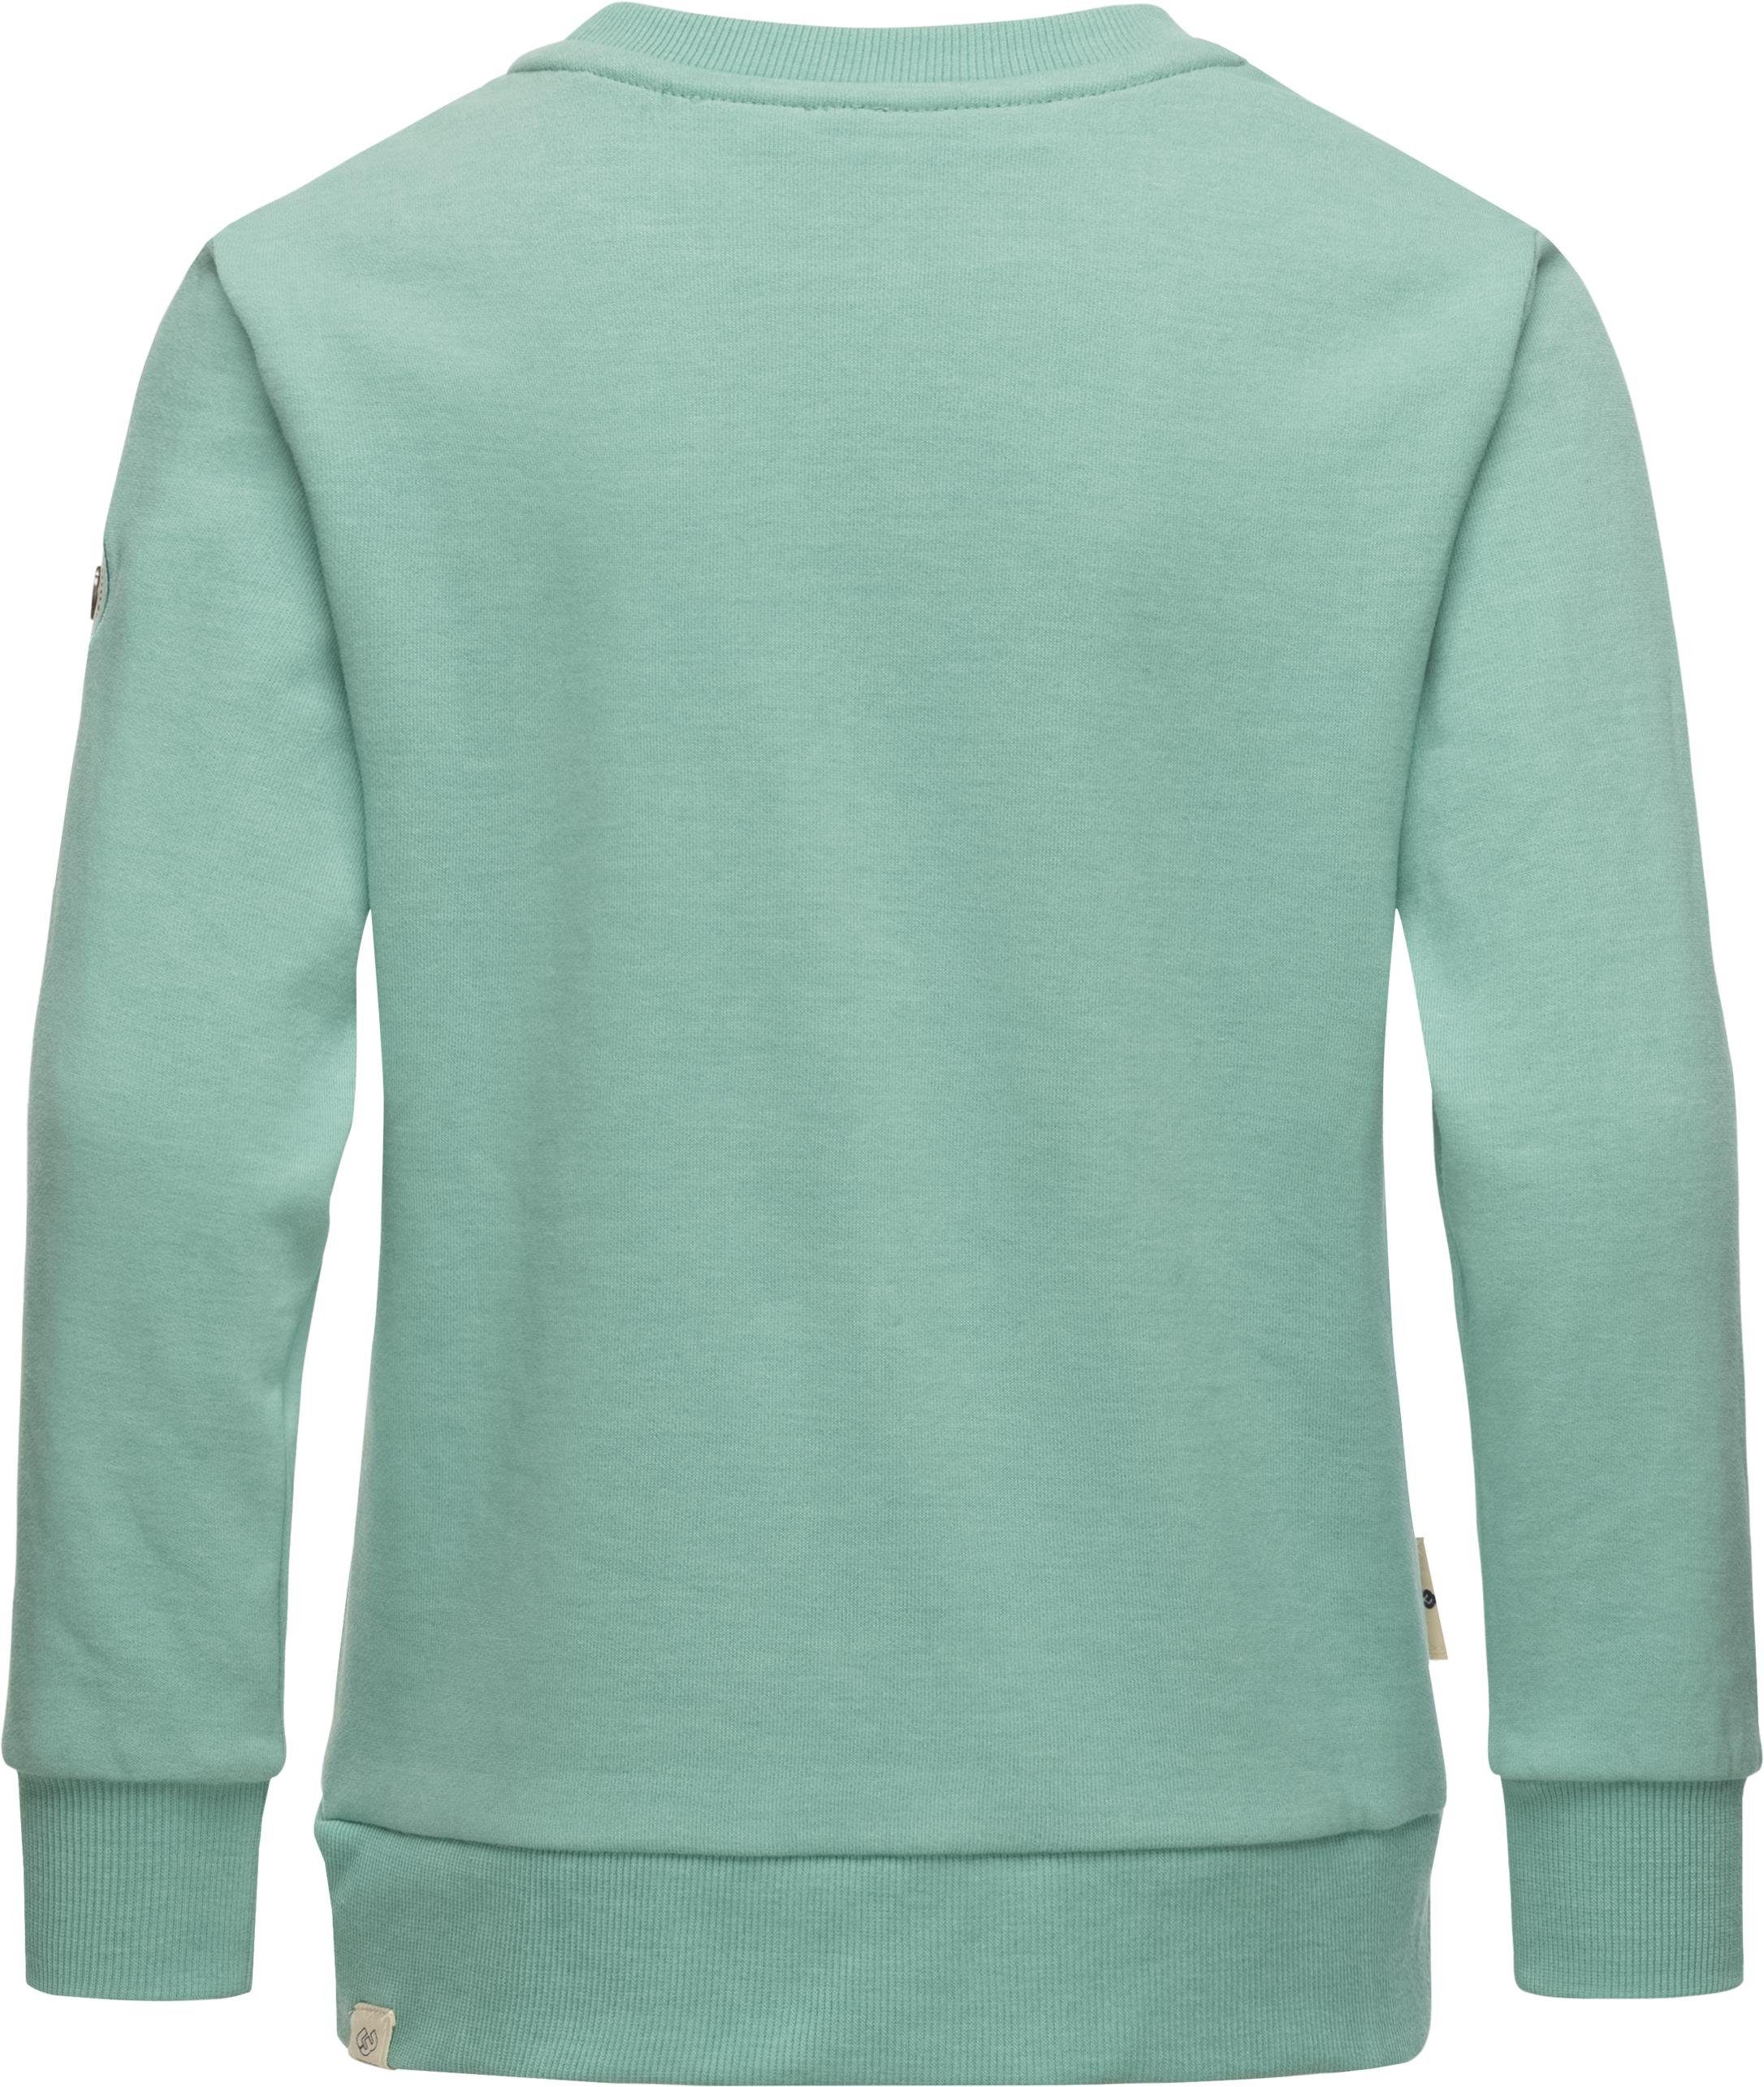 coolem blau Ragwear stylisches Print Evka mit Print Sweater Mädchen Sweatshirt Organic